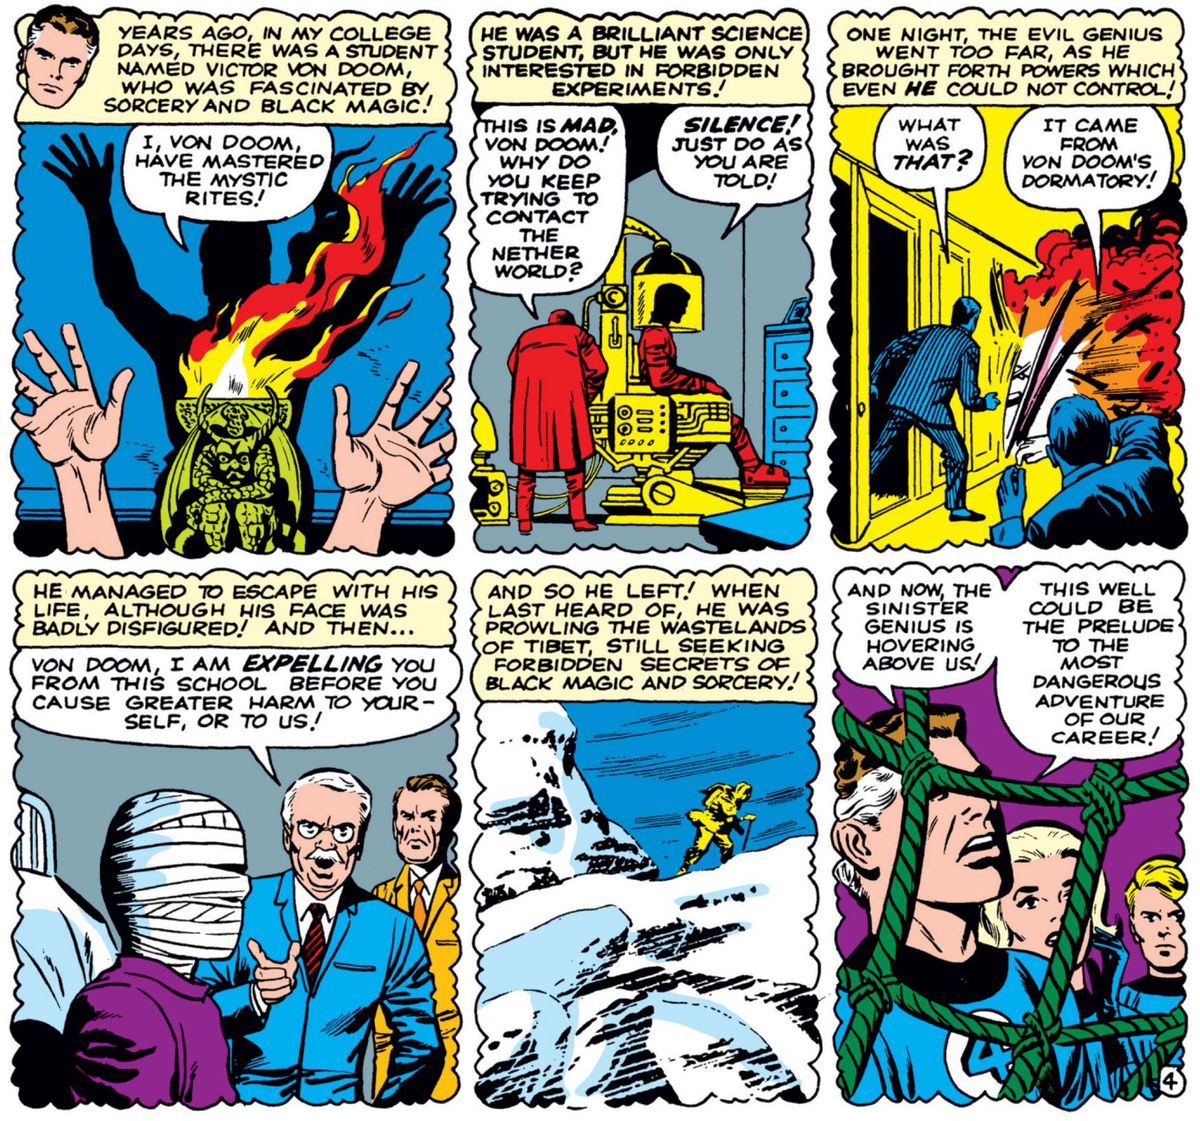 Six panneaux de Fantastic Four #5 montrent l'histoire des origines du Docteur Doom, qui déclare « Moi, Von Doom, j'ai maîtrisé les rites mystiques ! » avant de se mettre dans un engin scientifique élaboré pour essayer de « contacter le monde souterrain », ce qui défigure son visage et fait exploser son dortoir universitaire, ce qui lui vaut d'être expulsé.